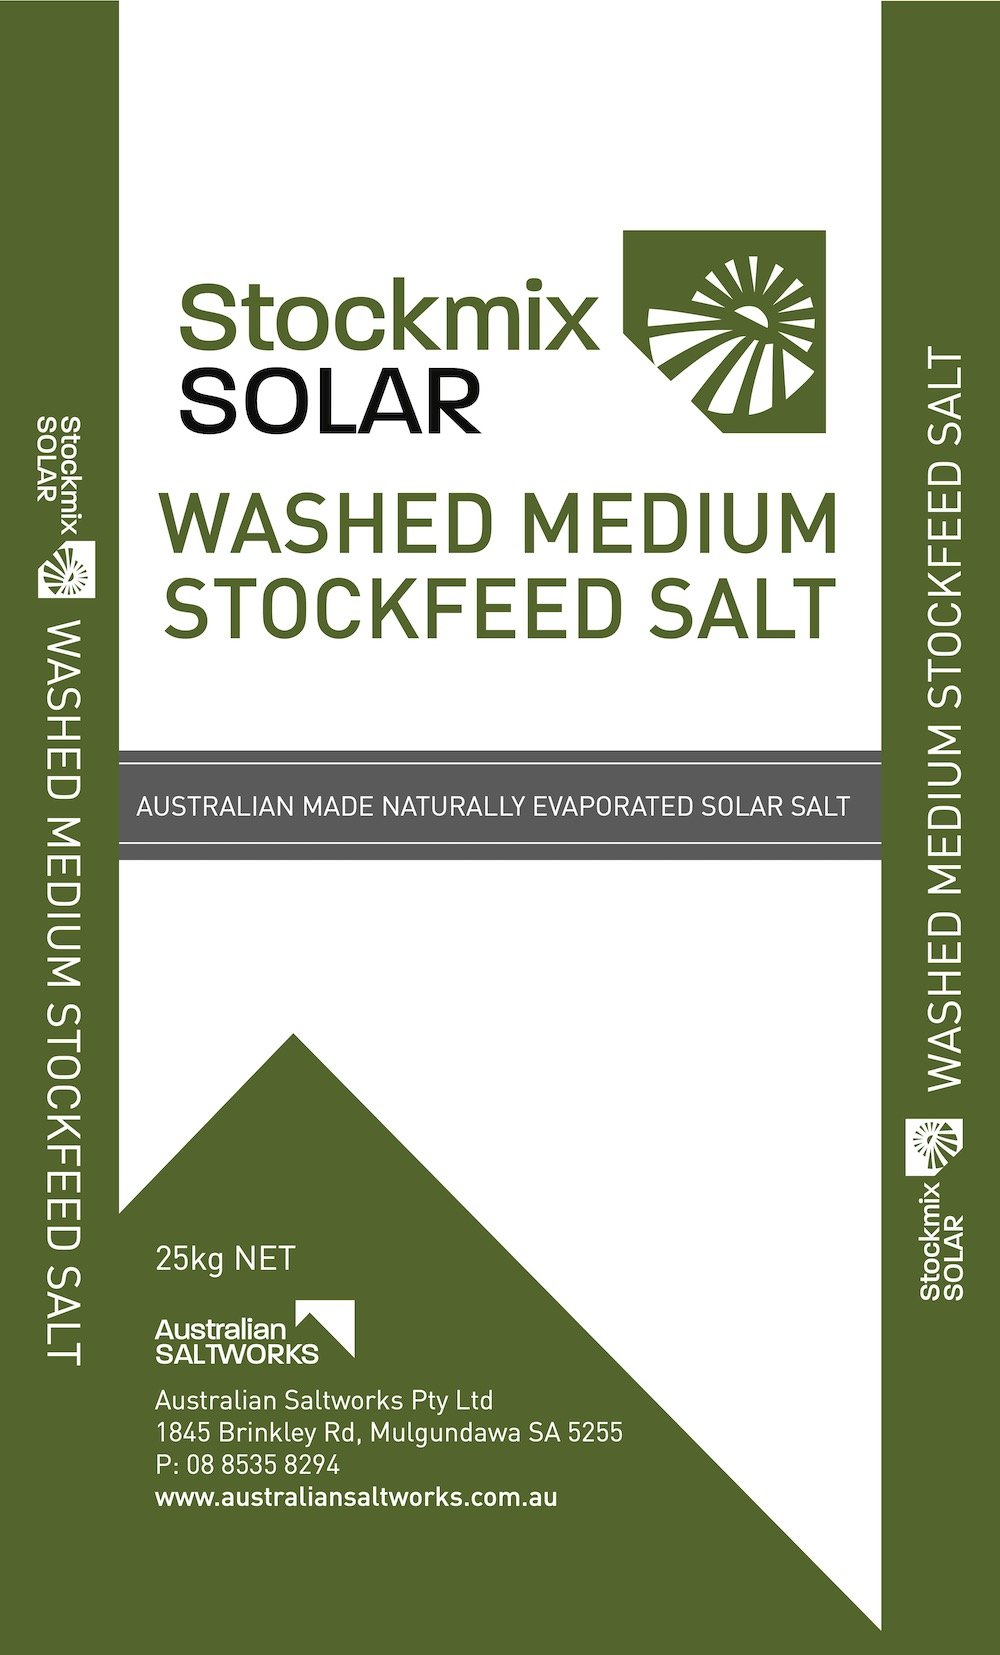 Stockmix Solar Washed Medium Stockfeed Salt.jpg